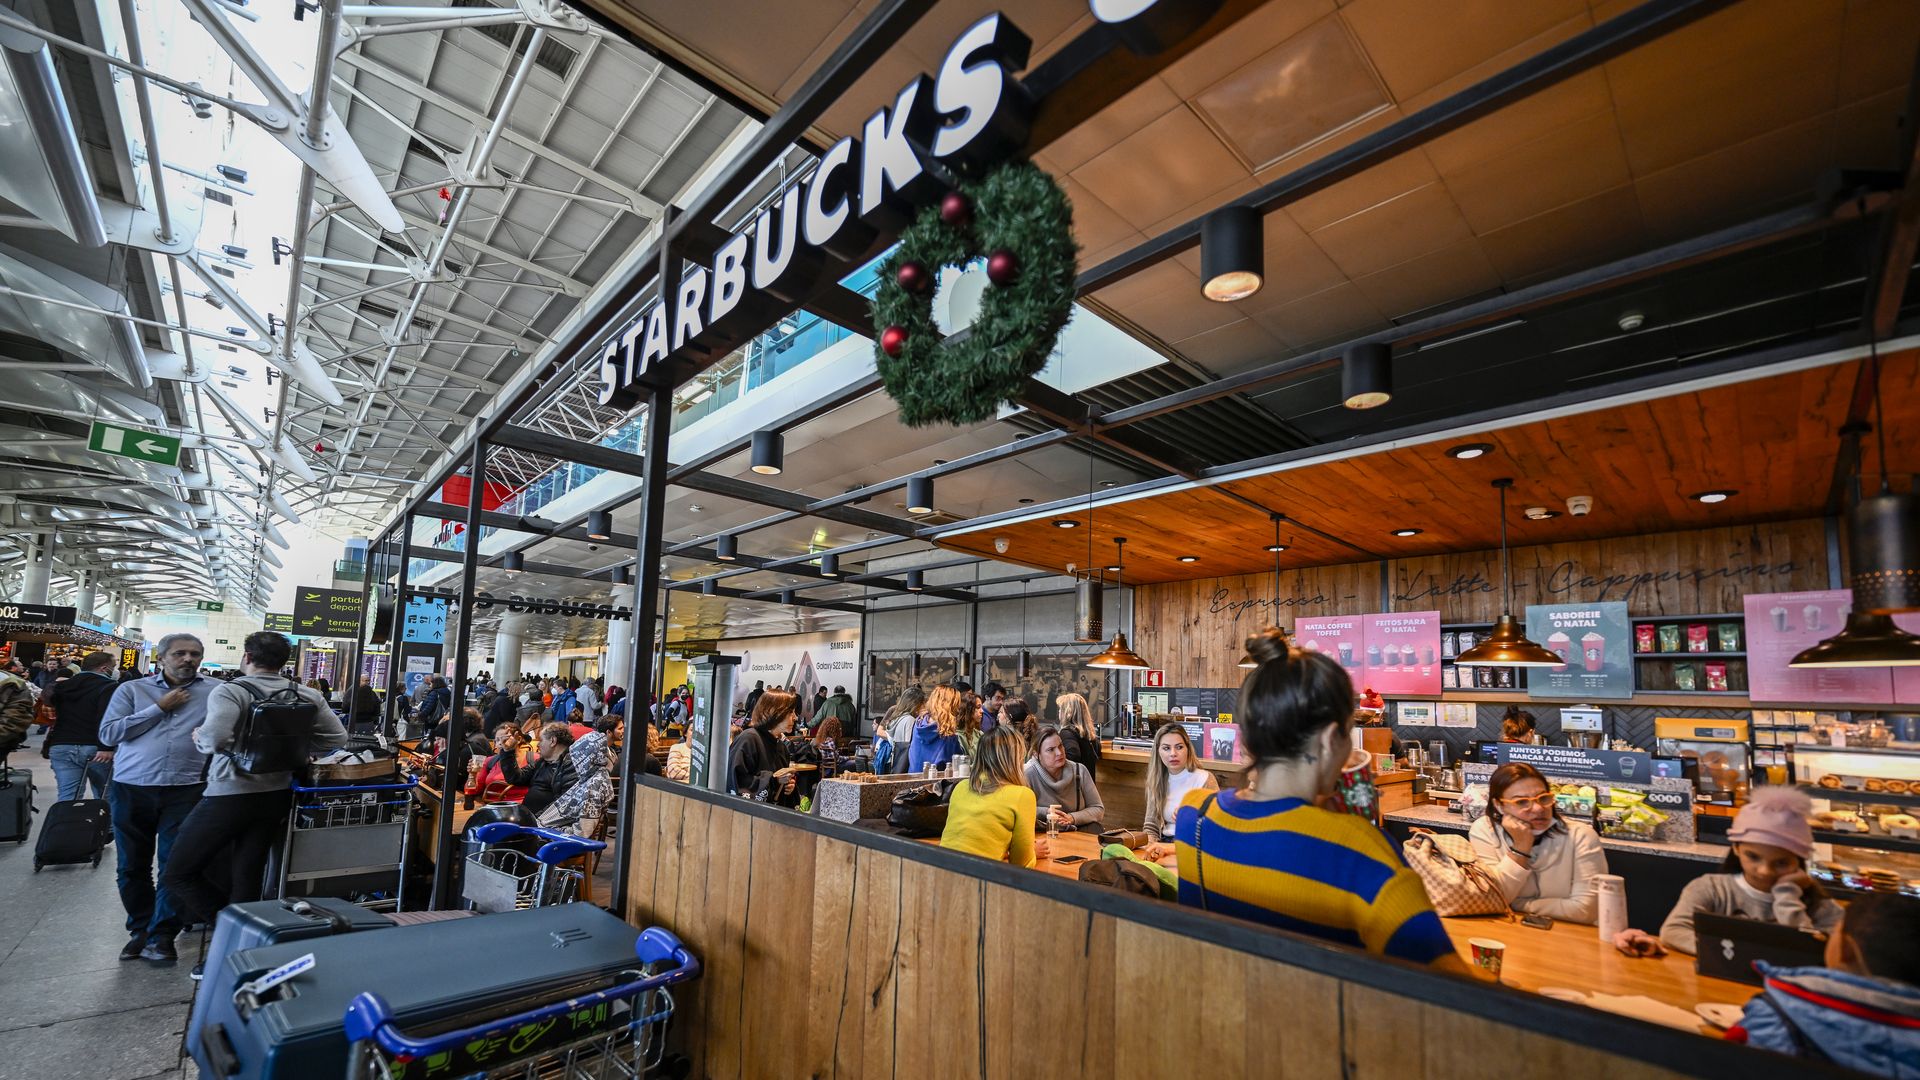 A Starbucks store inside an airport.